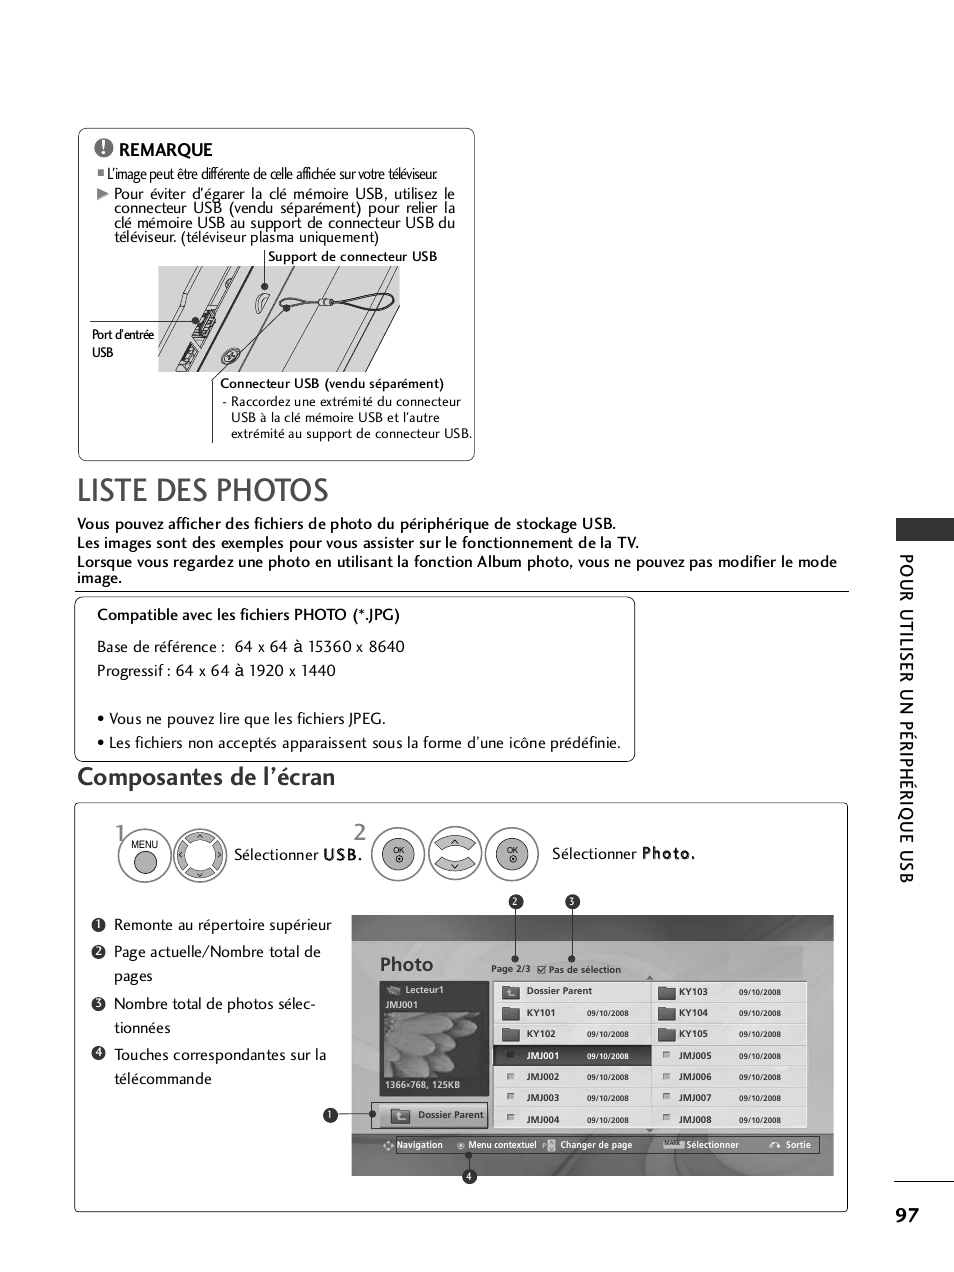 Liste des photos, Composantes de l’écran, Pour utiliser un périphérique usb | Photo, Remarque | LG 32LH40 Manuel d'utilisation | Page 99 / 180